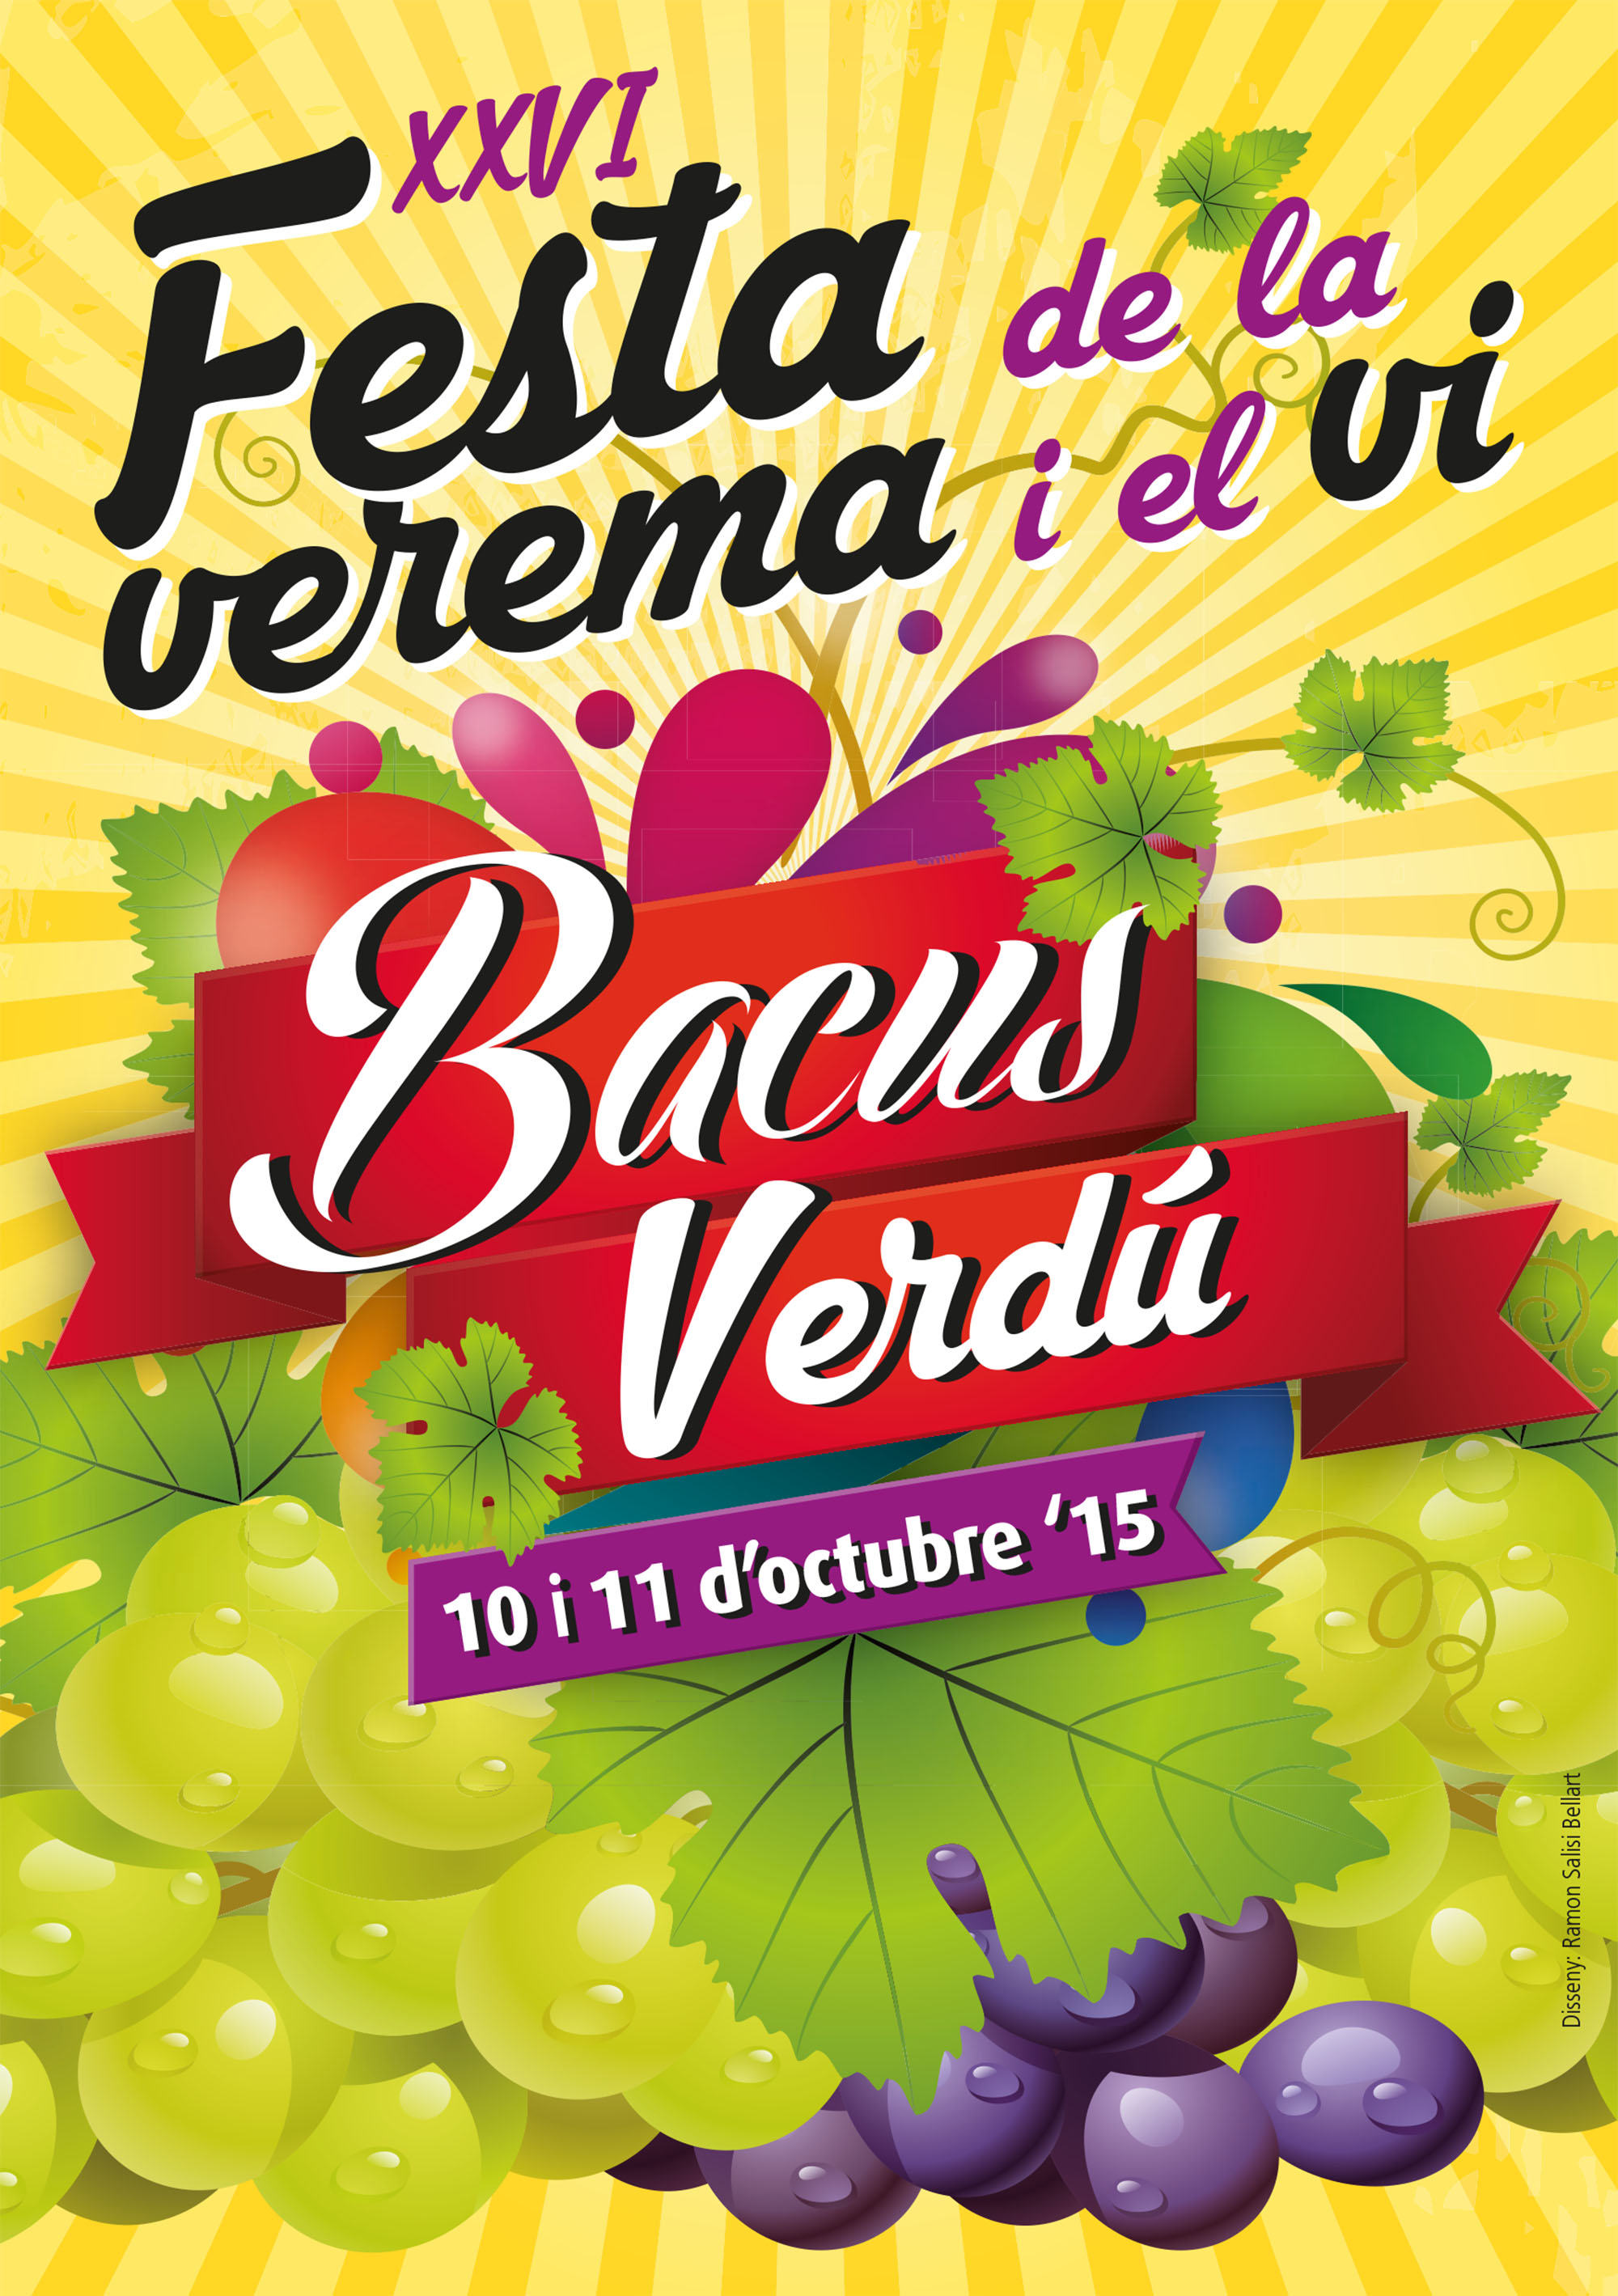 cartell 26è Bacus Verdú festa de la verema i el vi